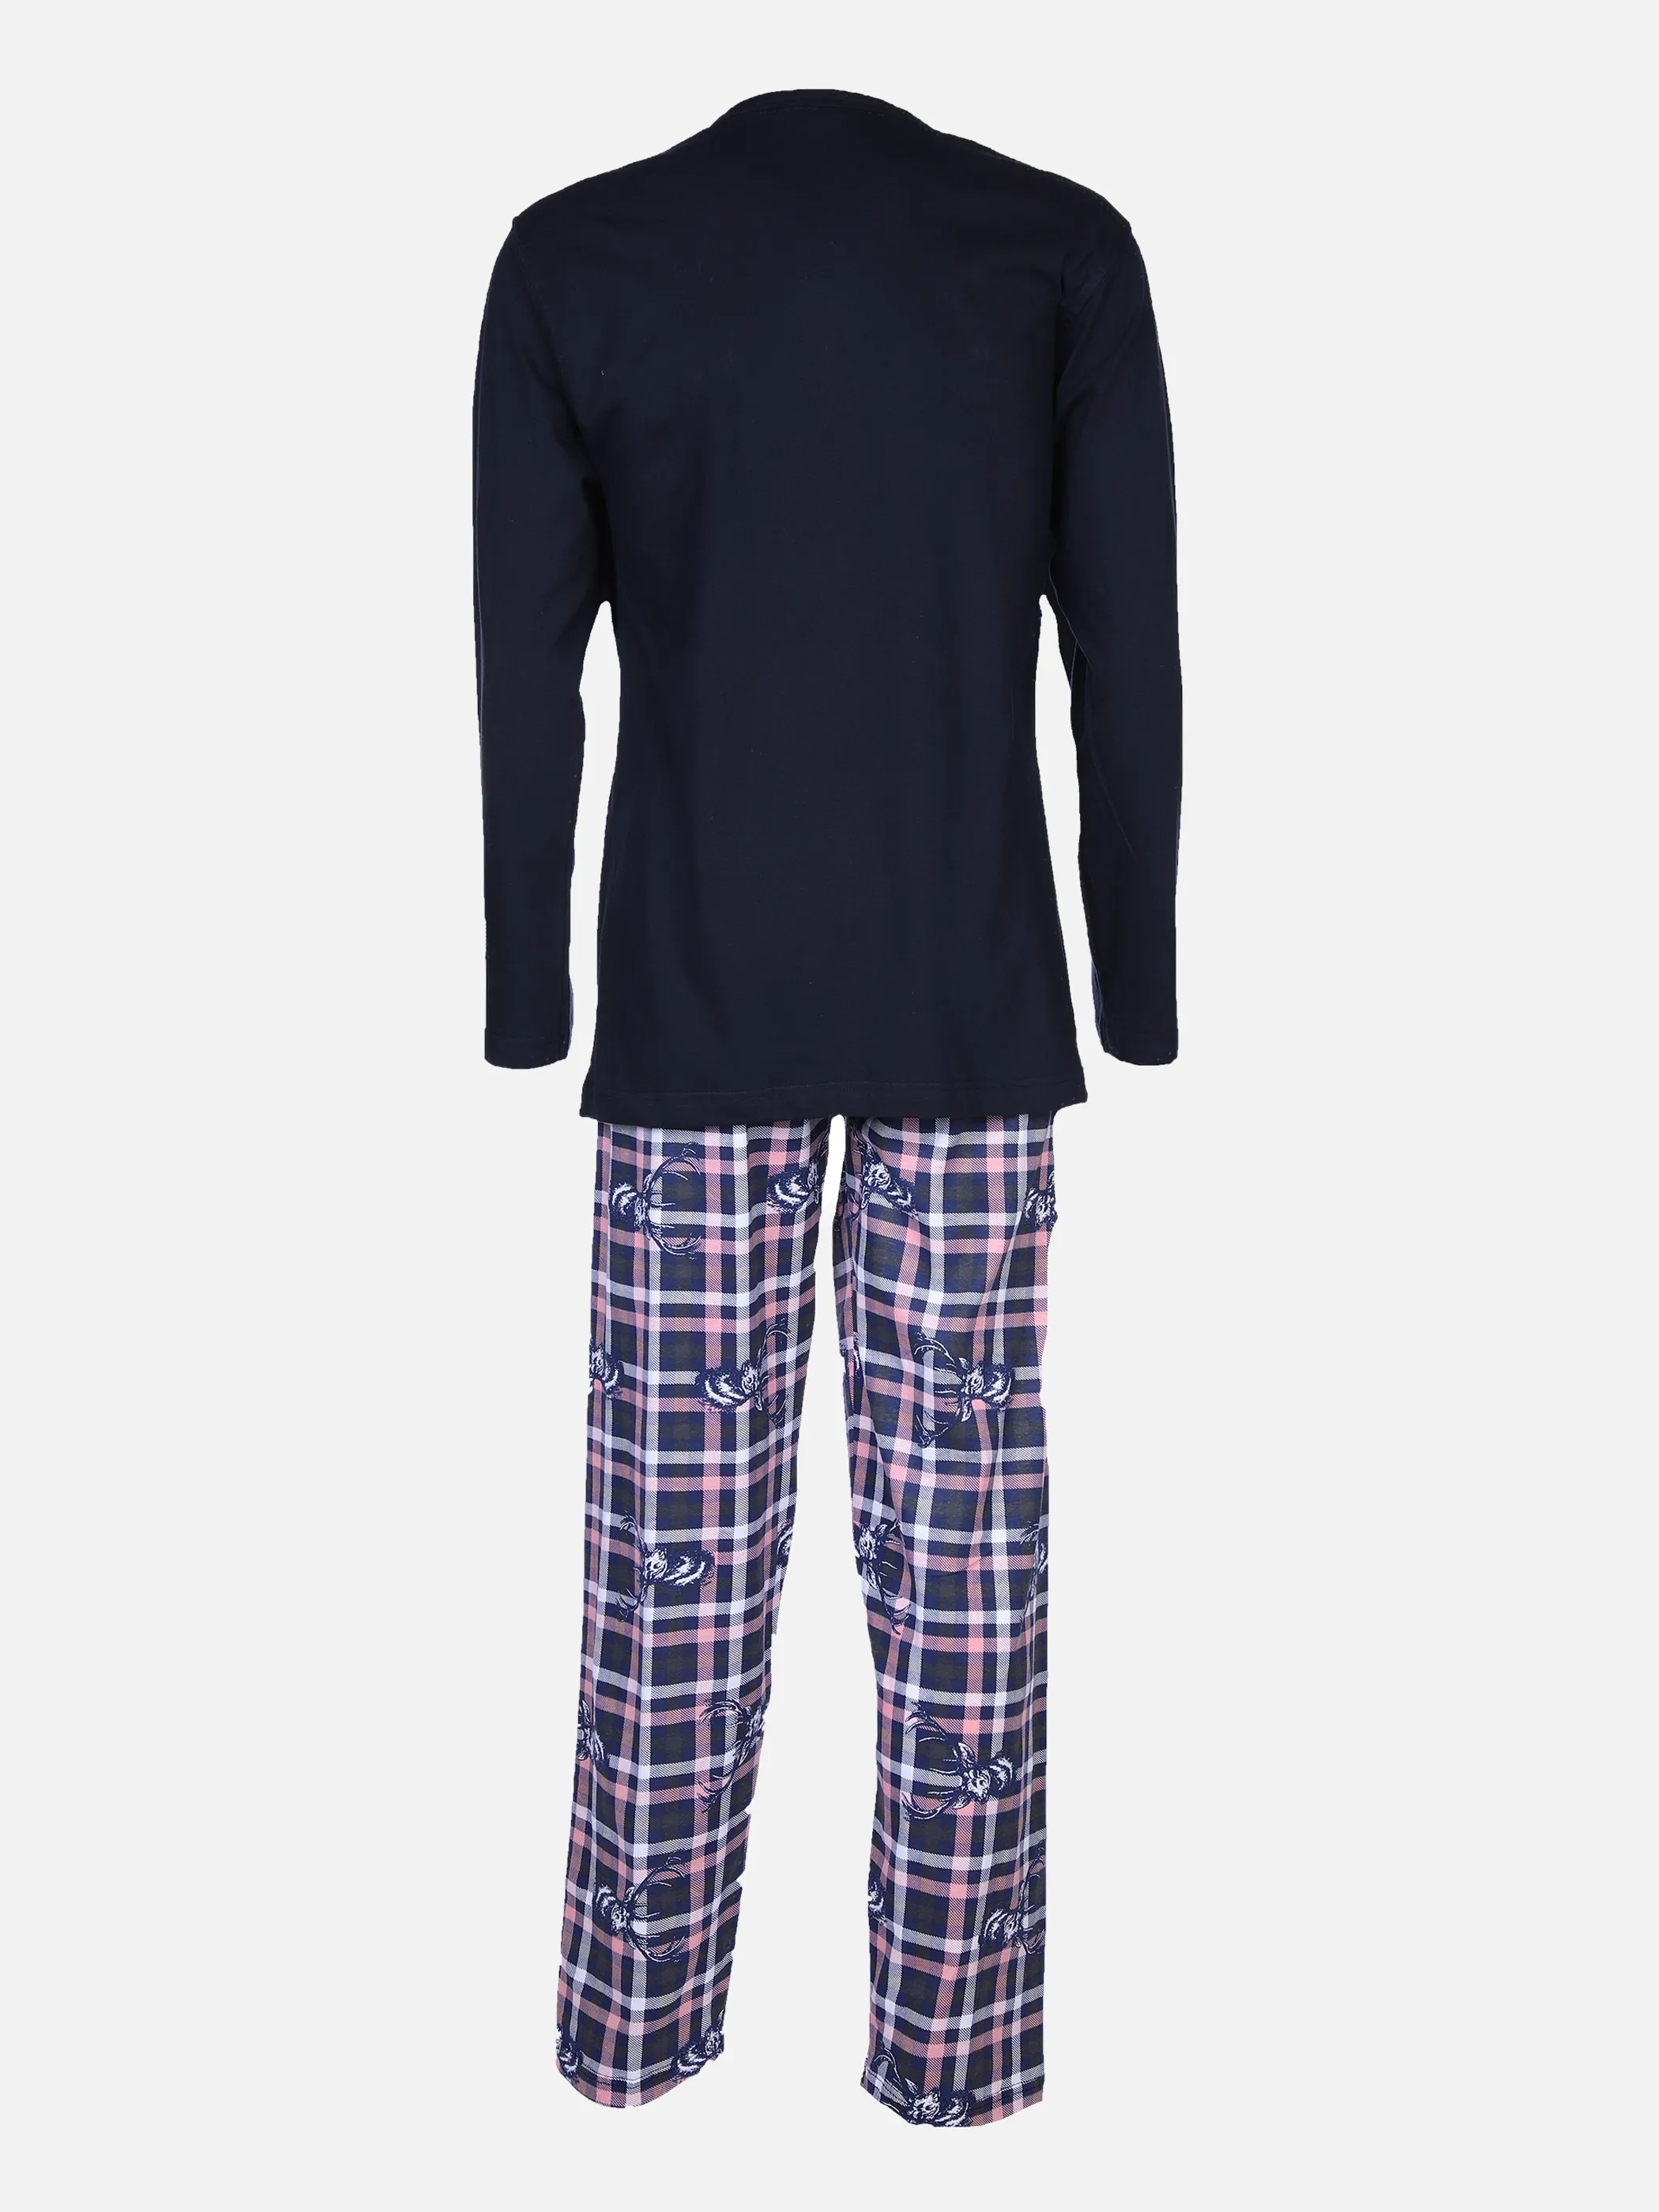 Jim Spencer He Pyjama Serafinoshirt + Hose Blau 870323 BLUE CHECK 2